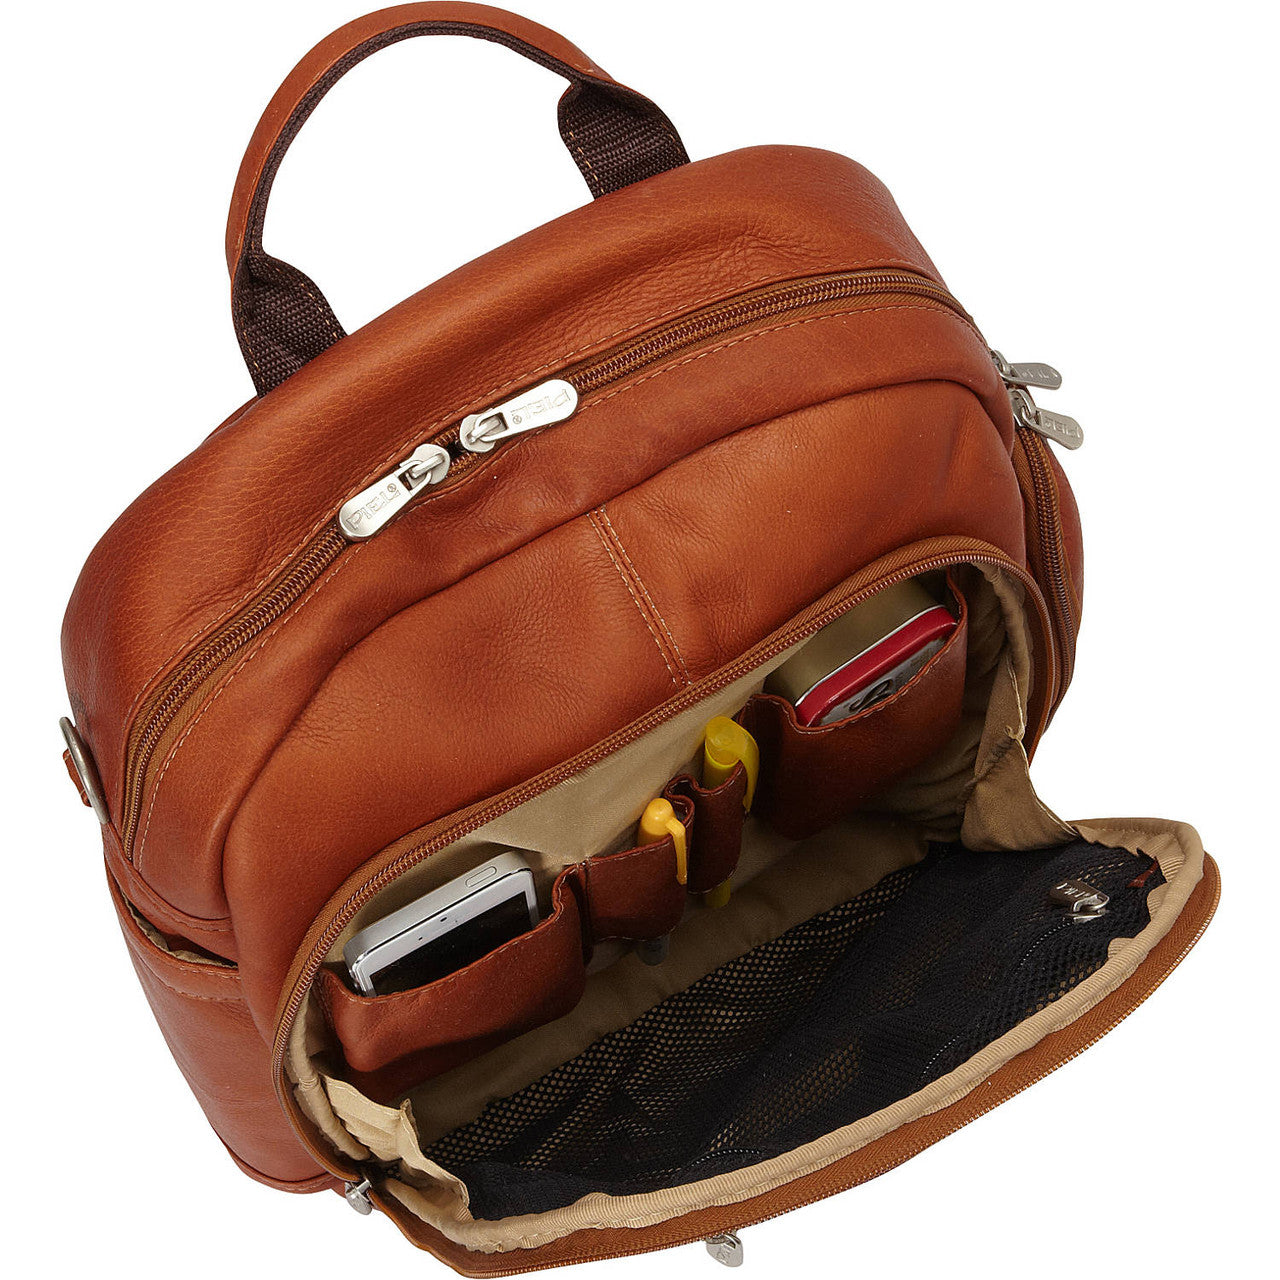 Laptop Backpack/Shoulder Bag - Leather Loom